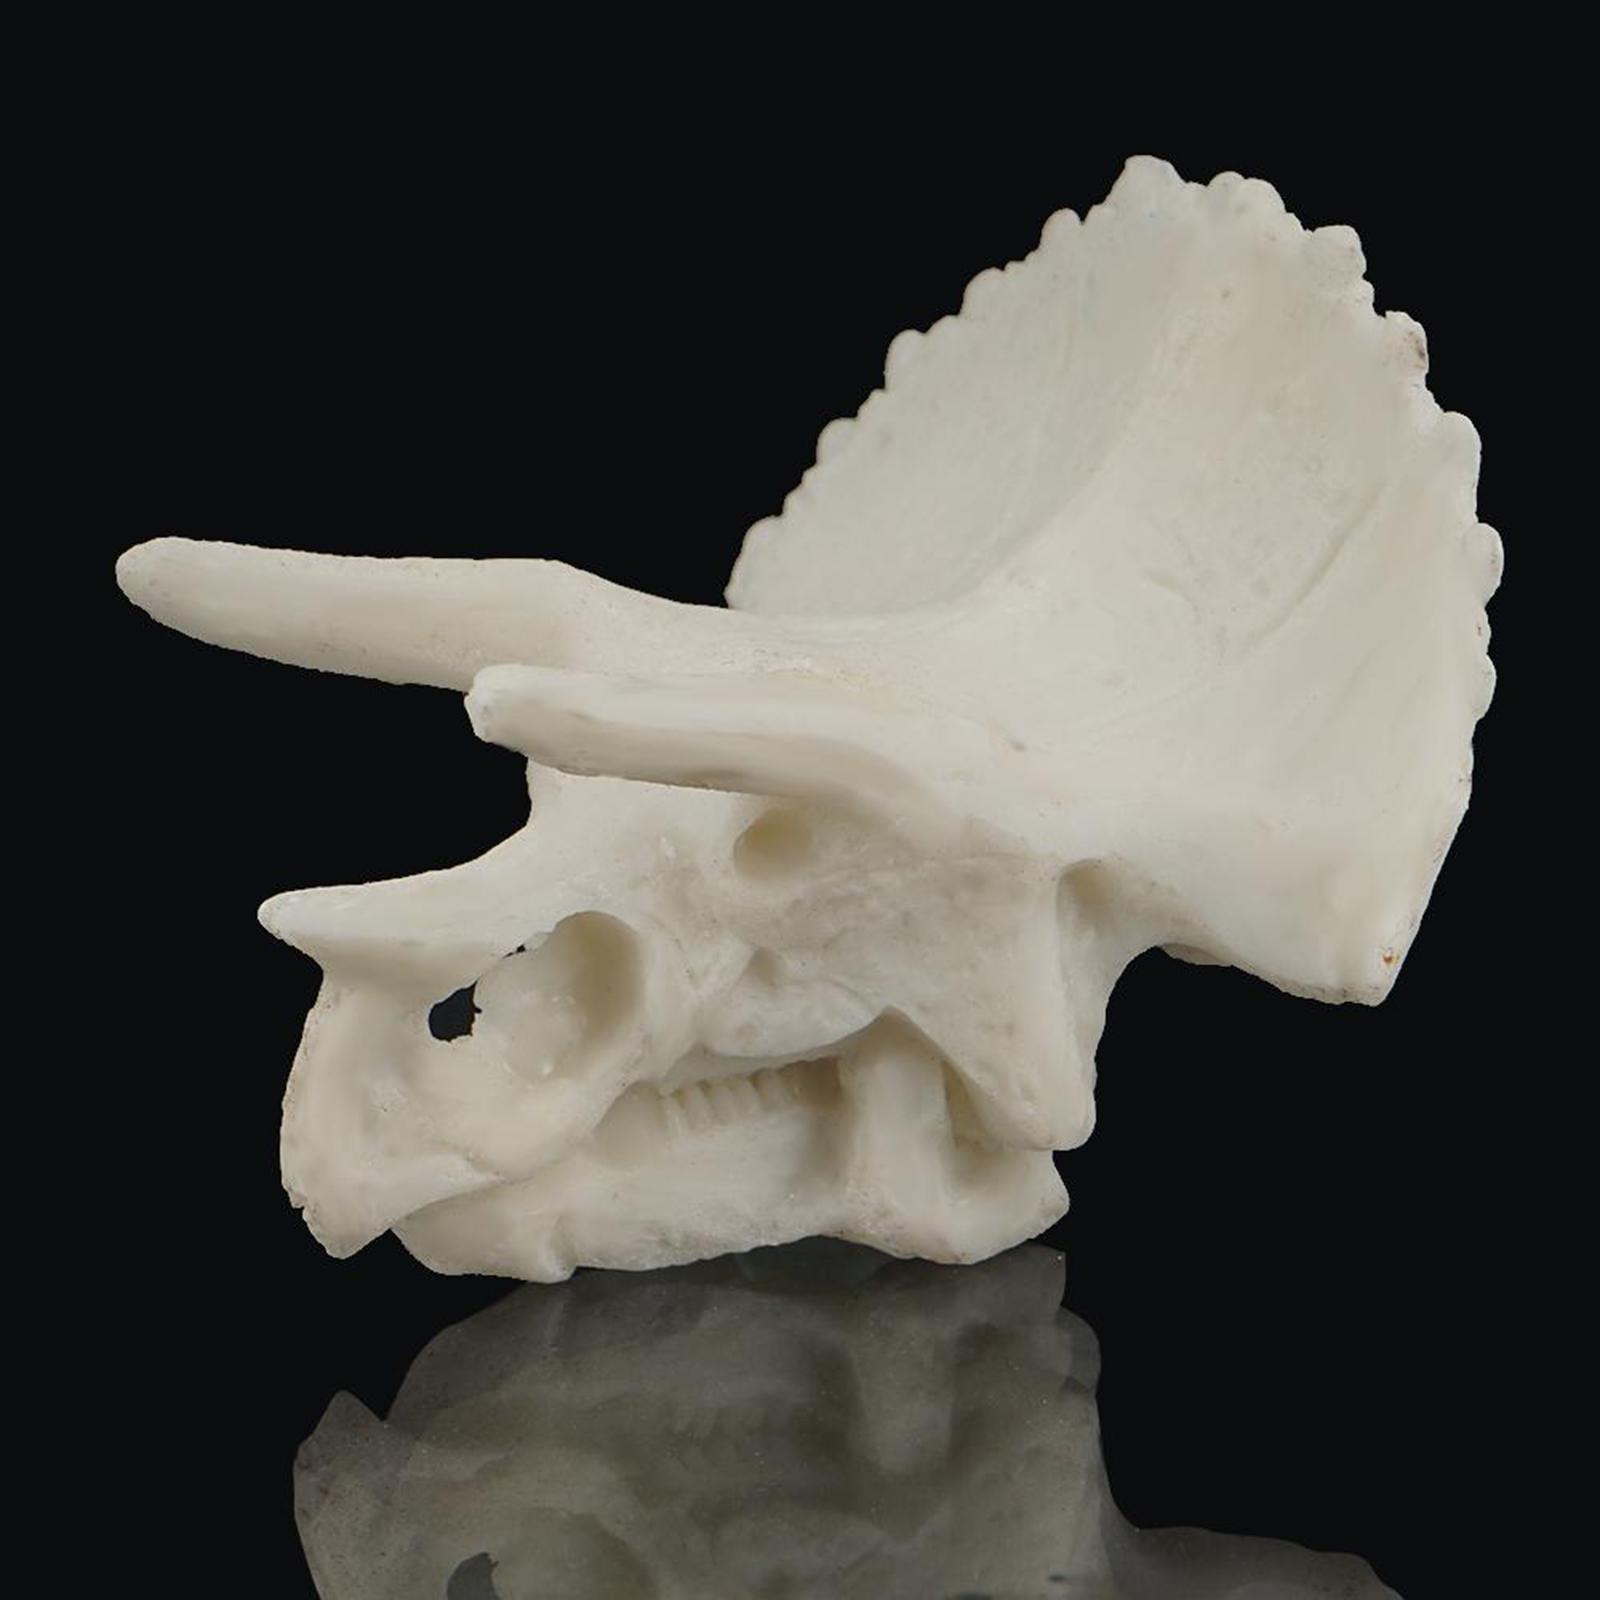 Aquarium Decoration Resin Skull Fish Tank Decor Fishes Cave triceratops